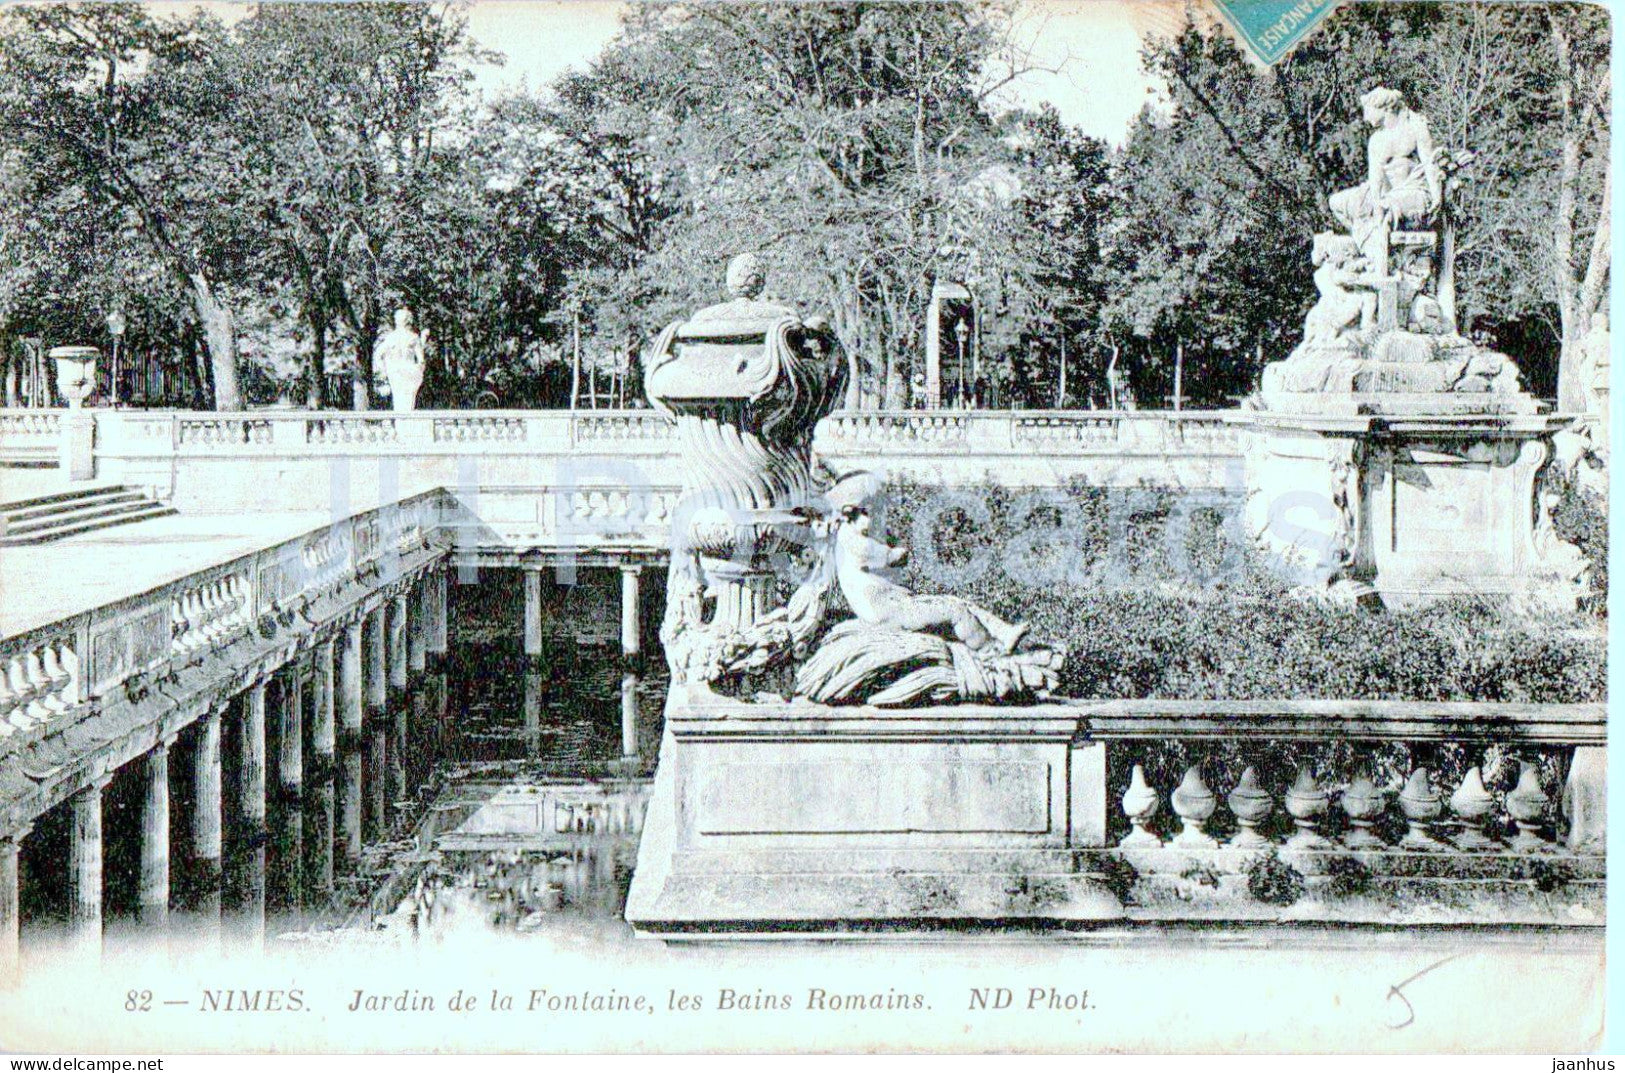 Nimes - Jardin de la Fontaine les Bains Romains - 82 - old postcard - 1912 - France - used - JH Postcards